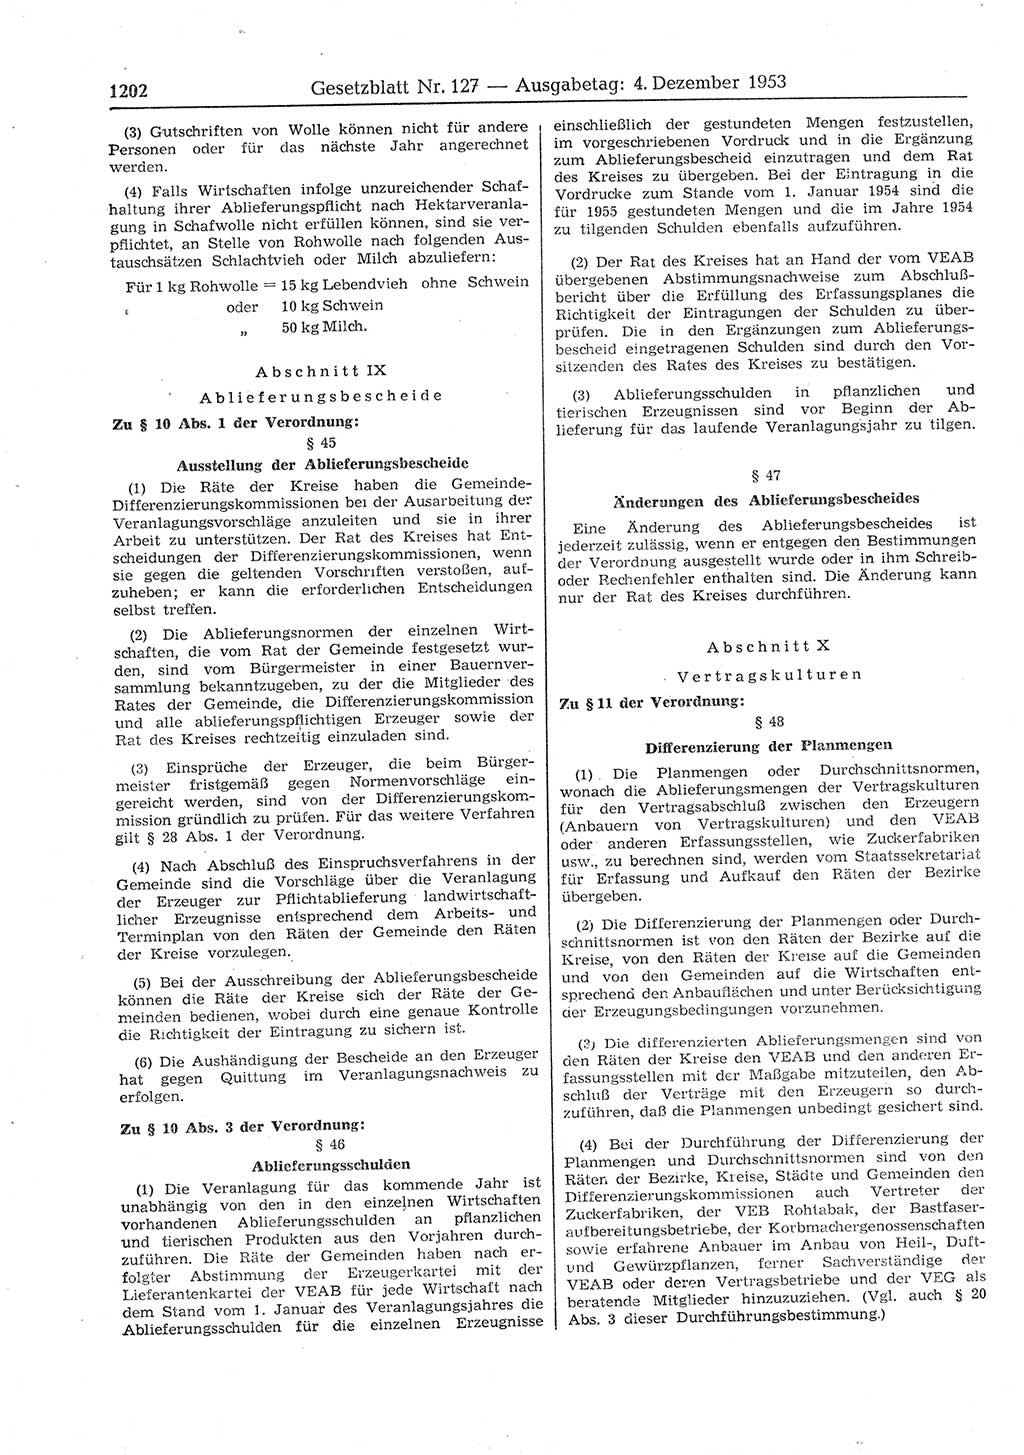 Gesetzblatt (GBl.) der Deutschen Demokratischen Republik (DDR) 1953, Seite 1202 (GBl. DDR 1953, S. 1202)